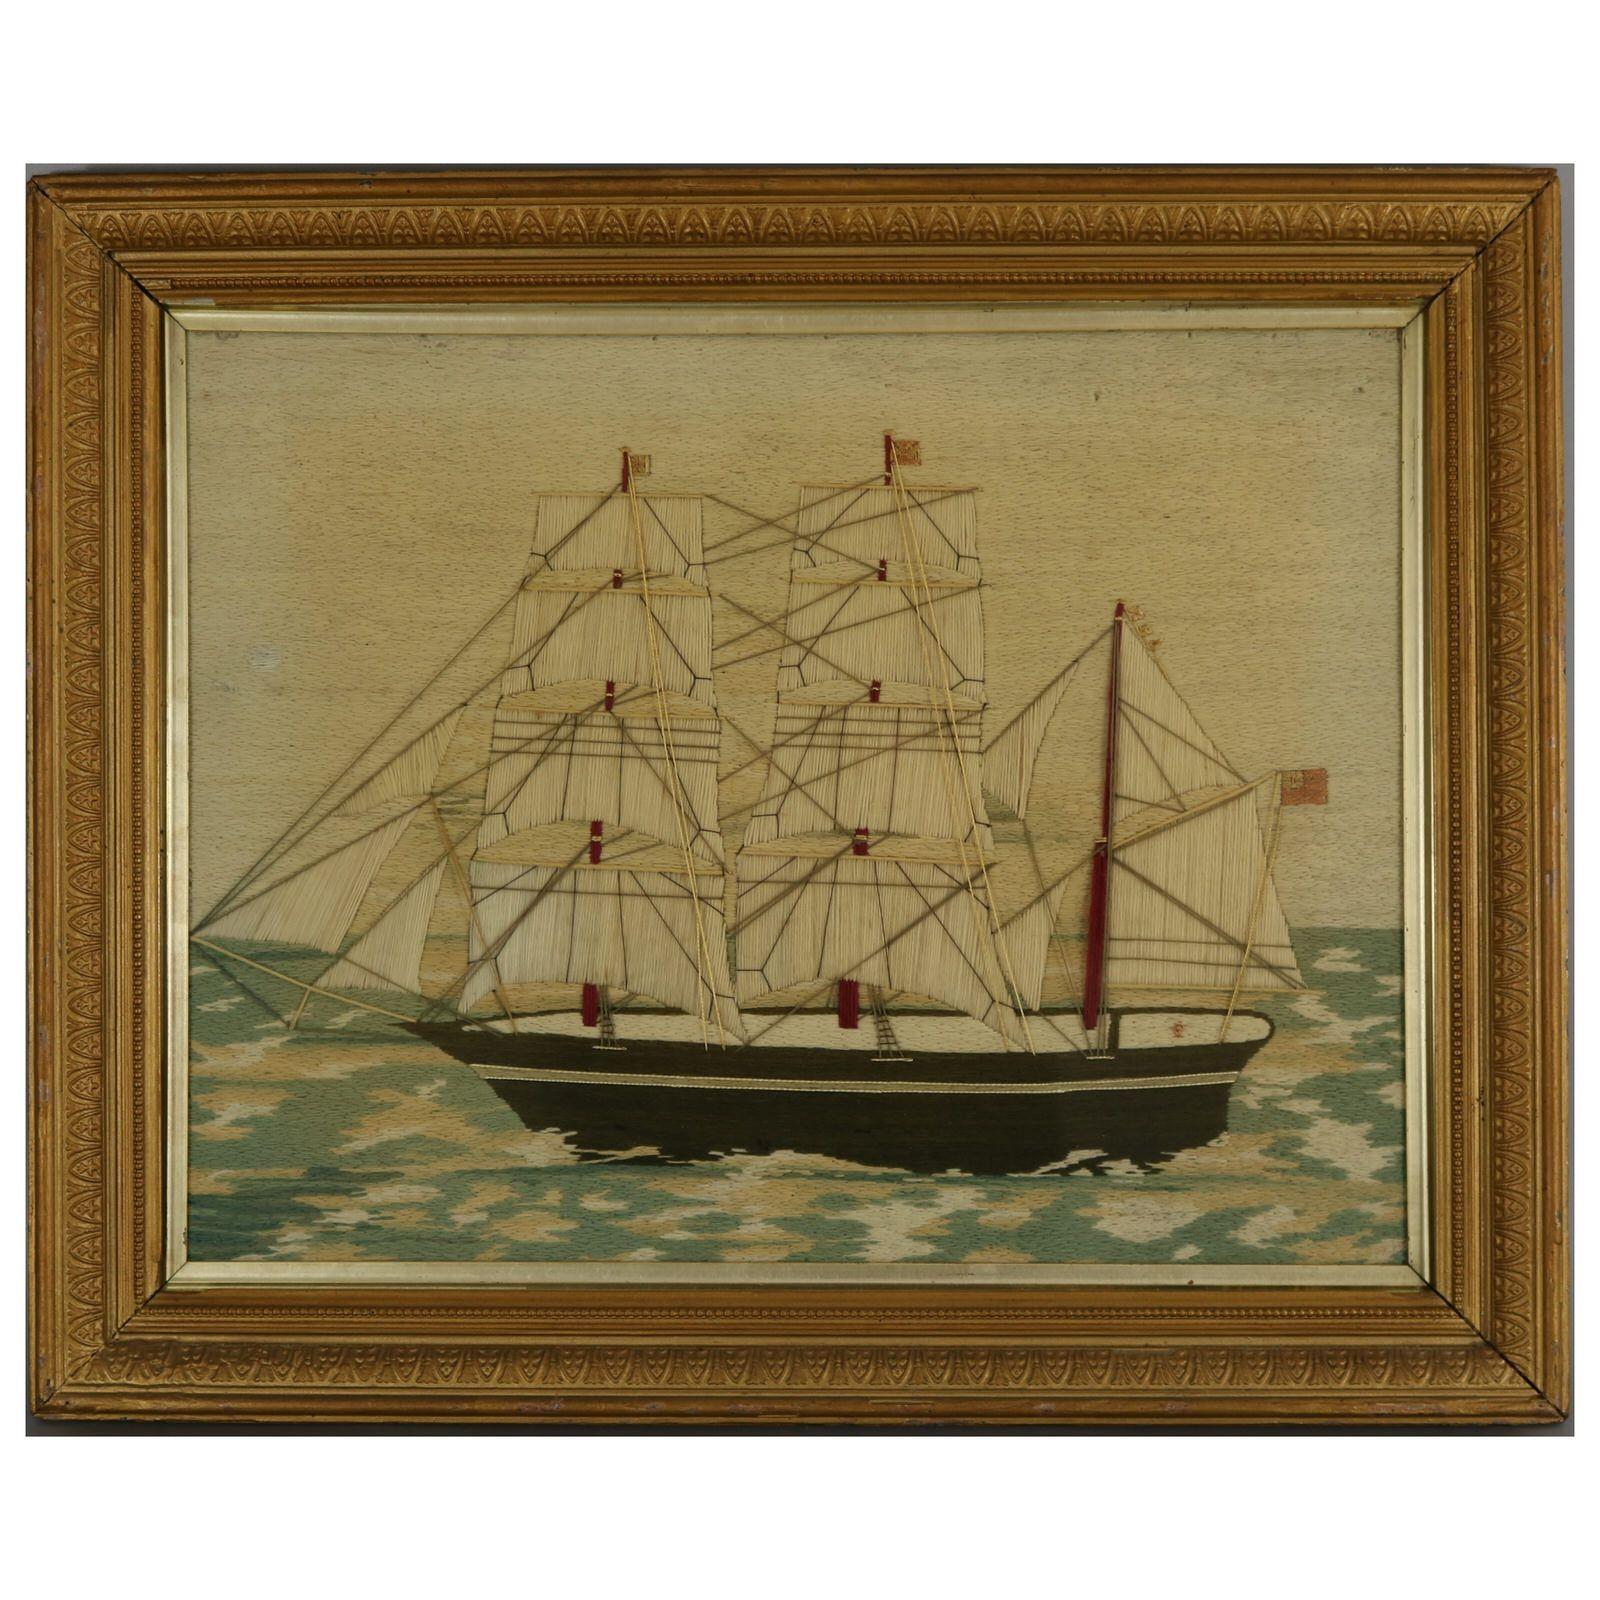 Paire de tableaux de marins en laine représentant des navires de guerre. Travaillé en laine sur un fond de toile. Couleurs blanc, bleu, marron, rouge, rose et crème. Tous deux représentent un navire de guerre à trois mâts, arborant un pavillon rouge